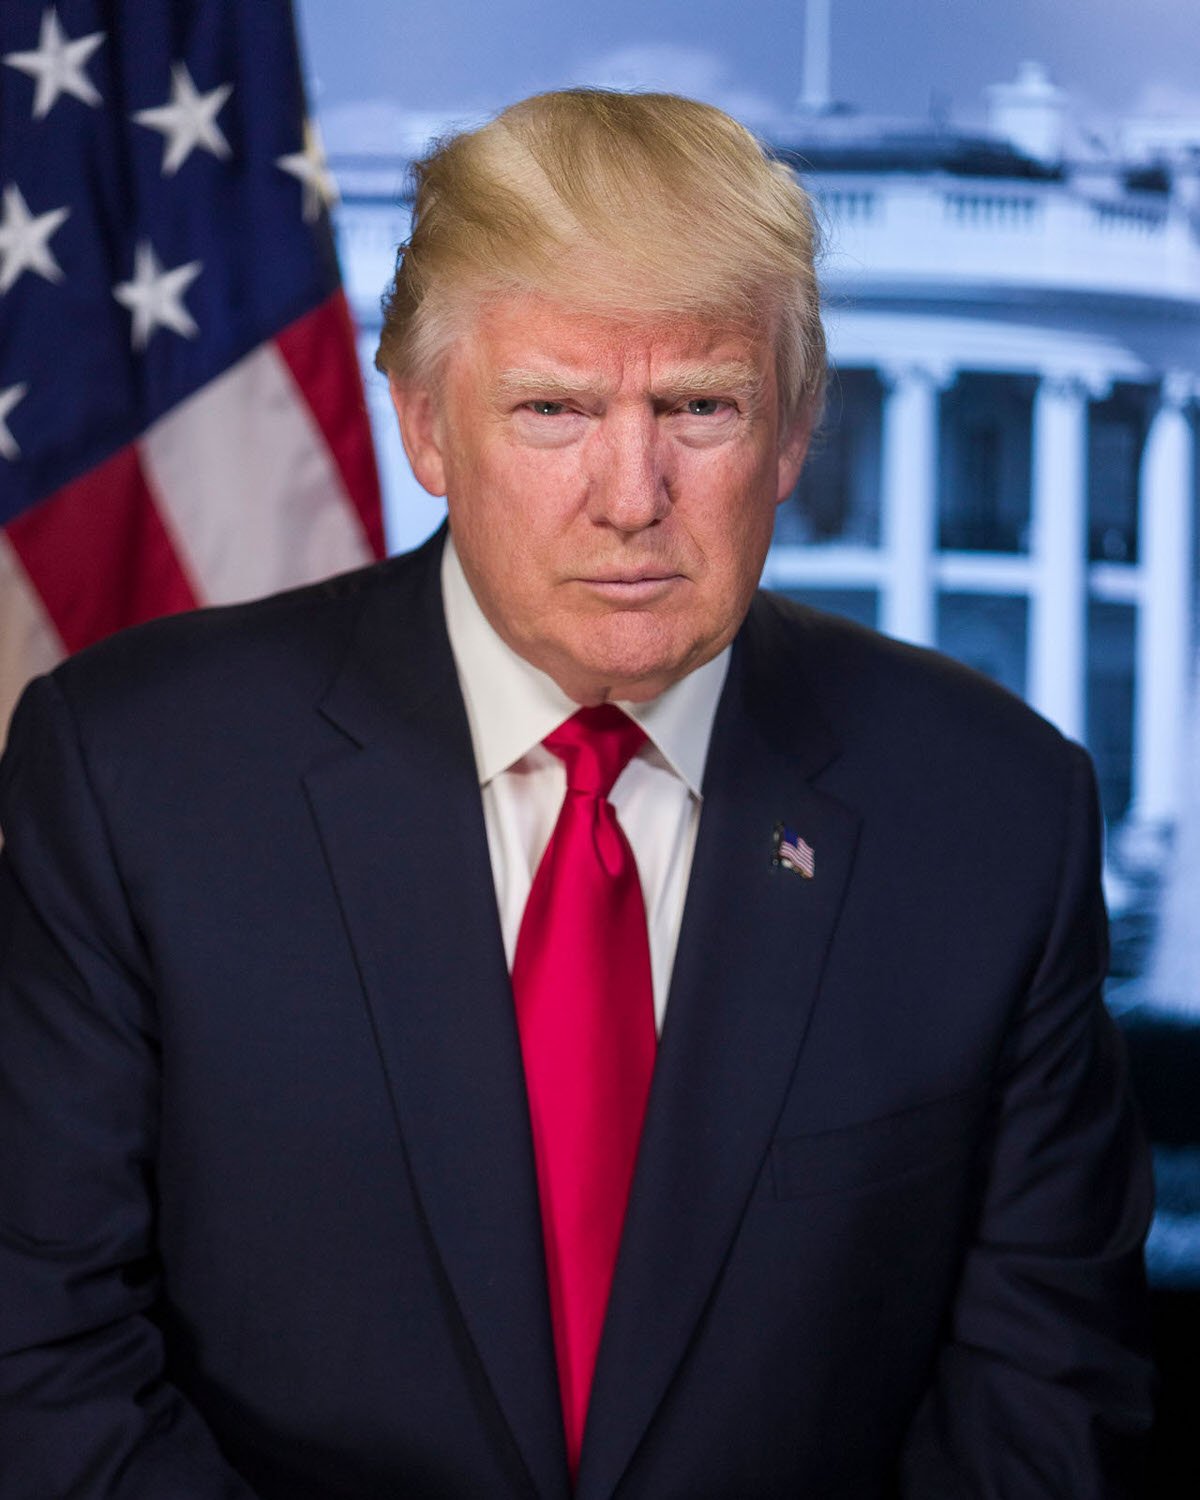  president trump official portrait 